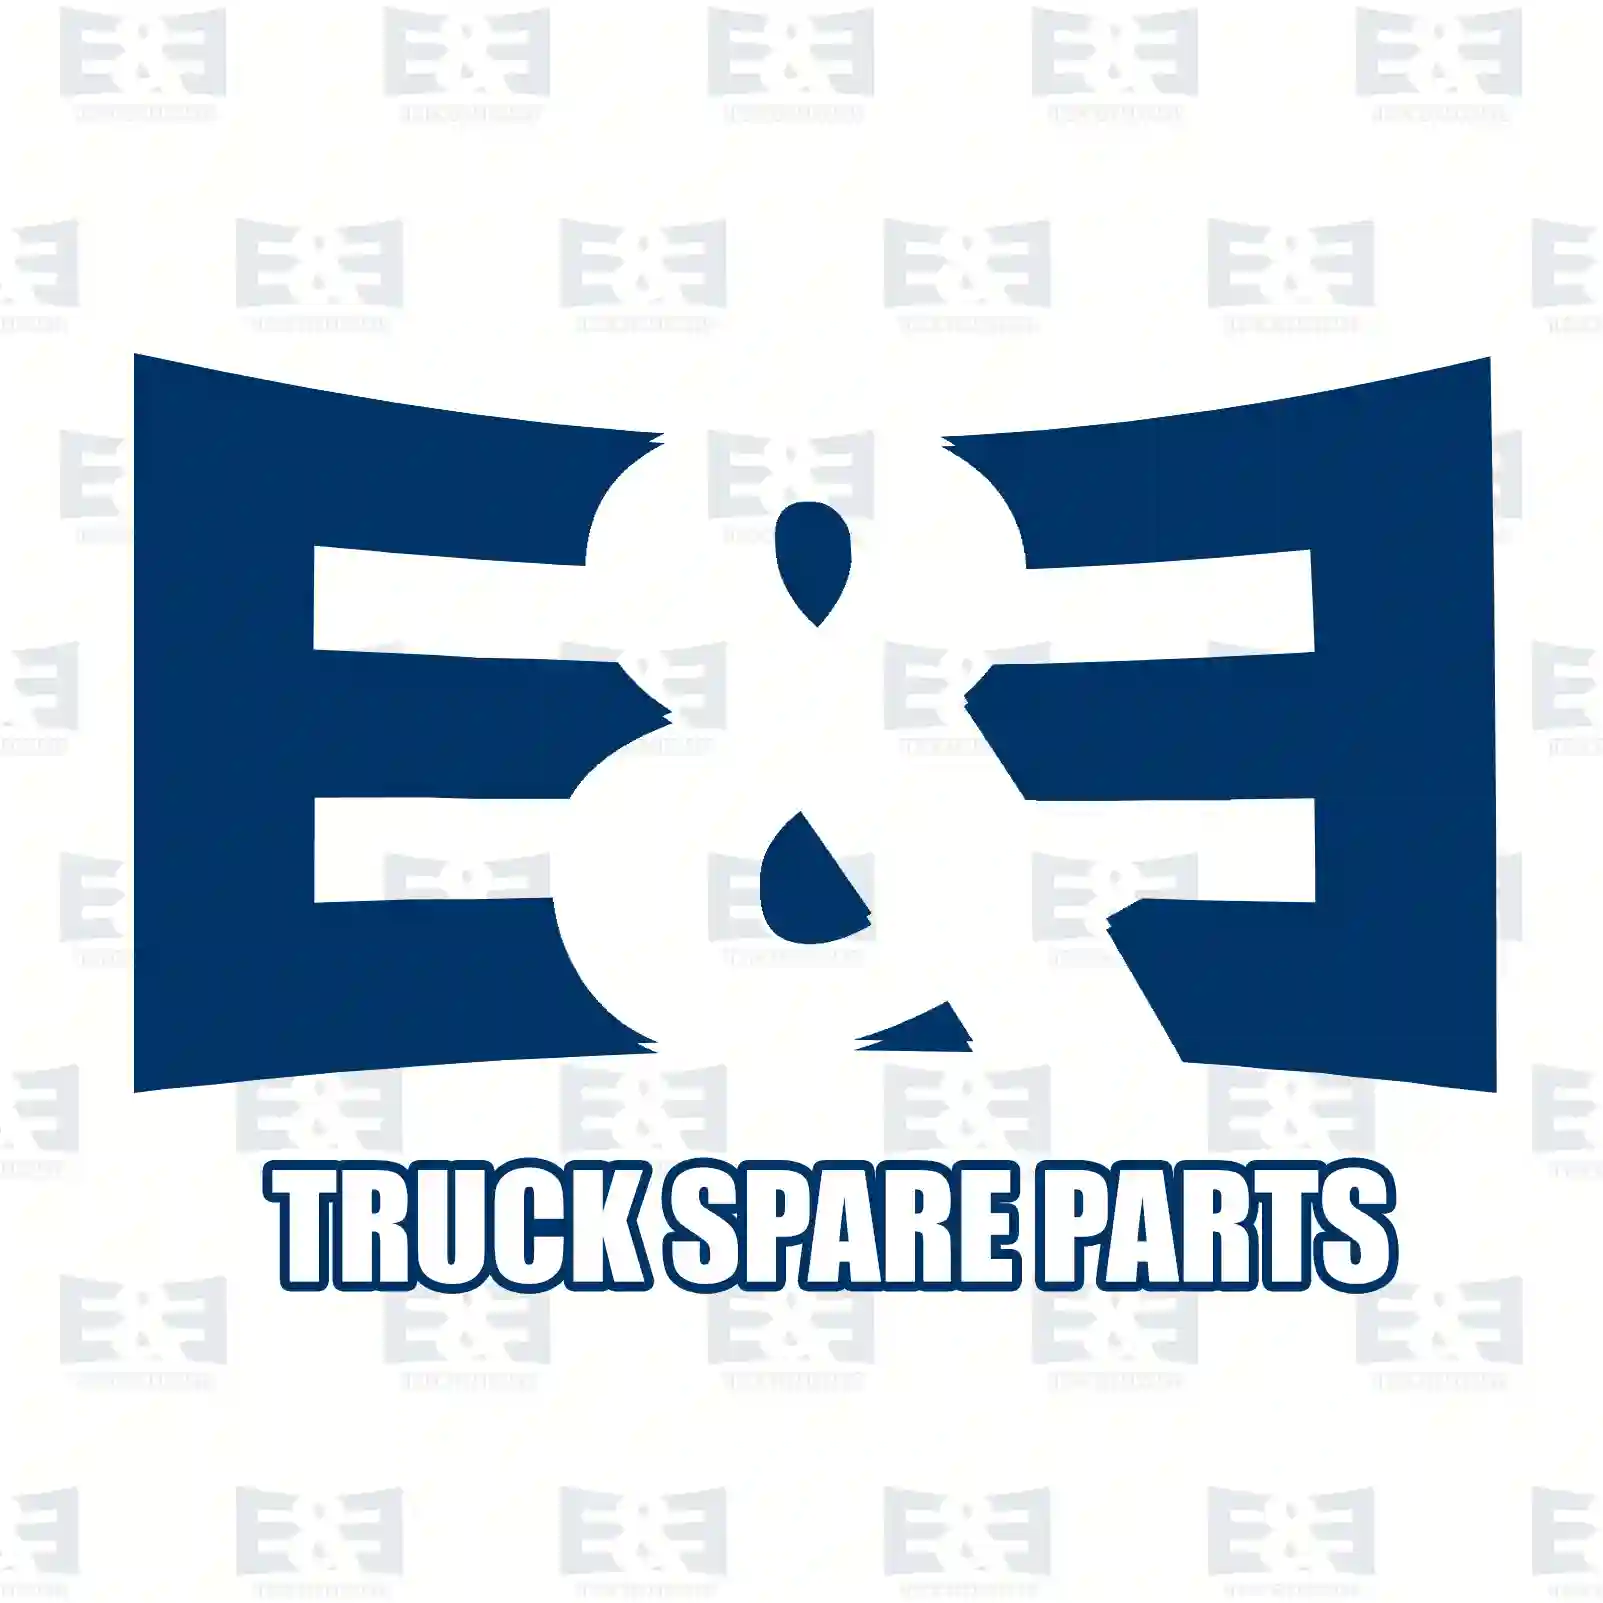 Oil seal, 2E2279114, 0179979947, 0189974947, 0189977347 ||  2E2279114 E&E Truck Spare Parts | Truck Spare Parts, Auotomotive Spare Parts Oil seal, 2E2279114, 0179979947, 0189974947, 0189977347 ||  2E2279114 E&E Truck Spare Parts | Truck Spare Parts, Auotomotive Spare Parts